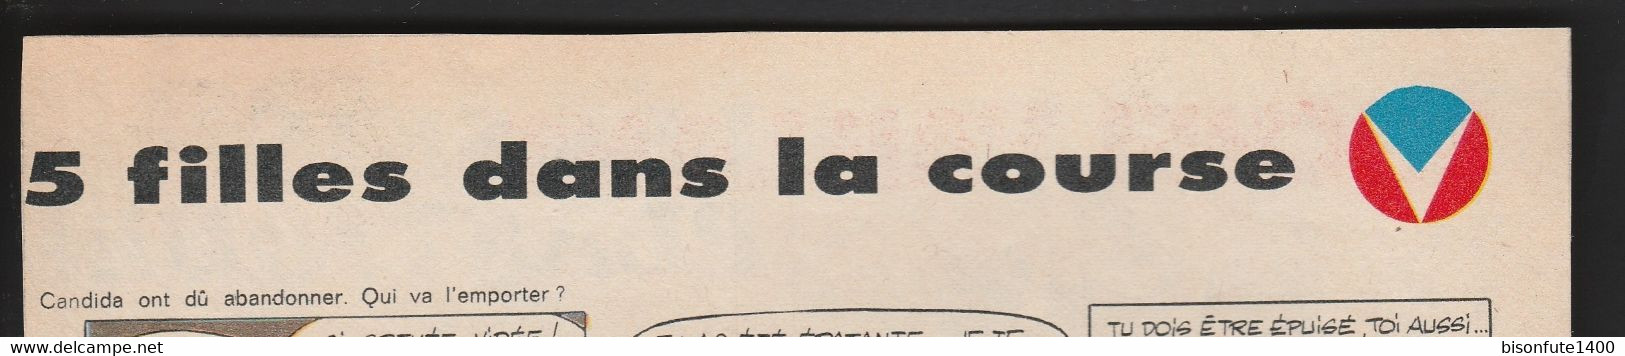 Bandeau Titre De Michel Vaillant "5 Filles Dans La Course" Datant De 1970 Et Inédit Dans Les Bandes Dessinées En Albums. - Michel Vaillant